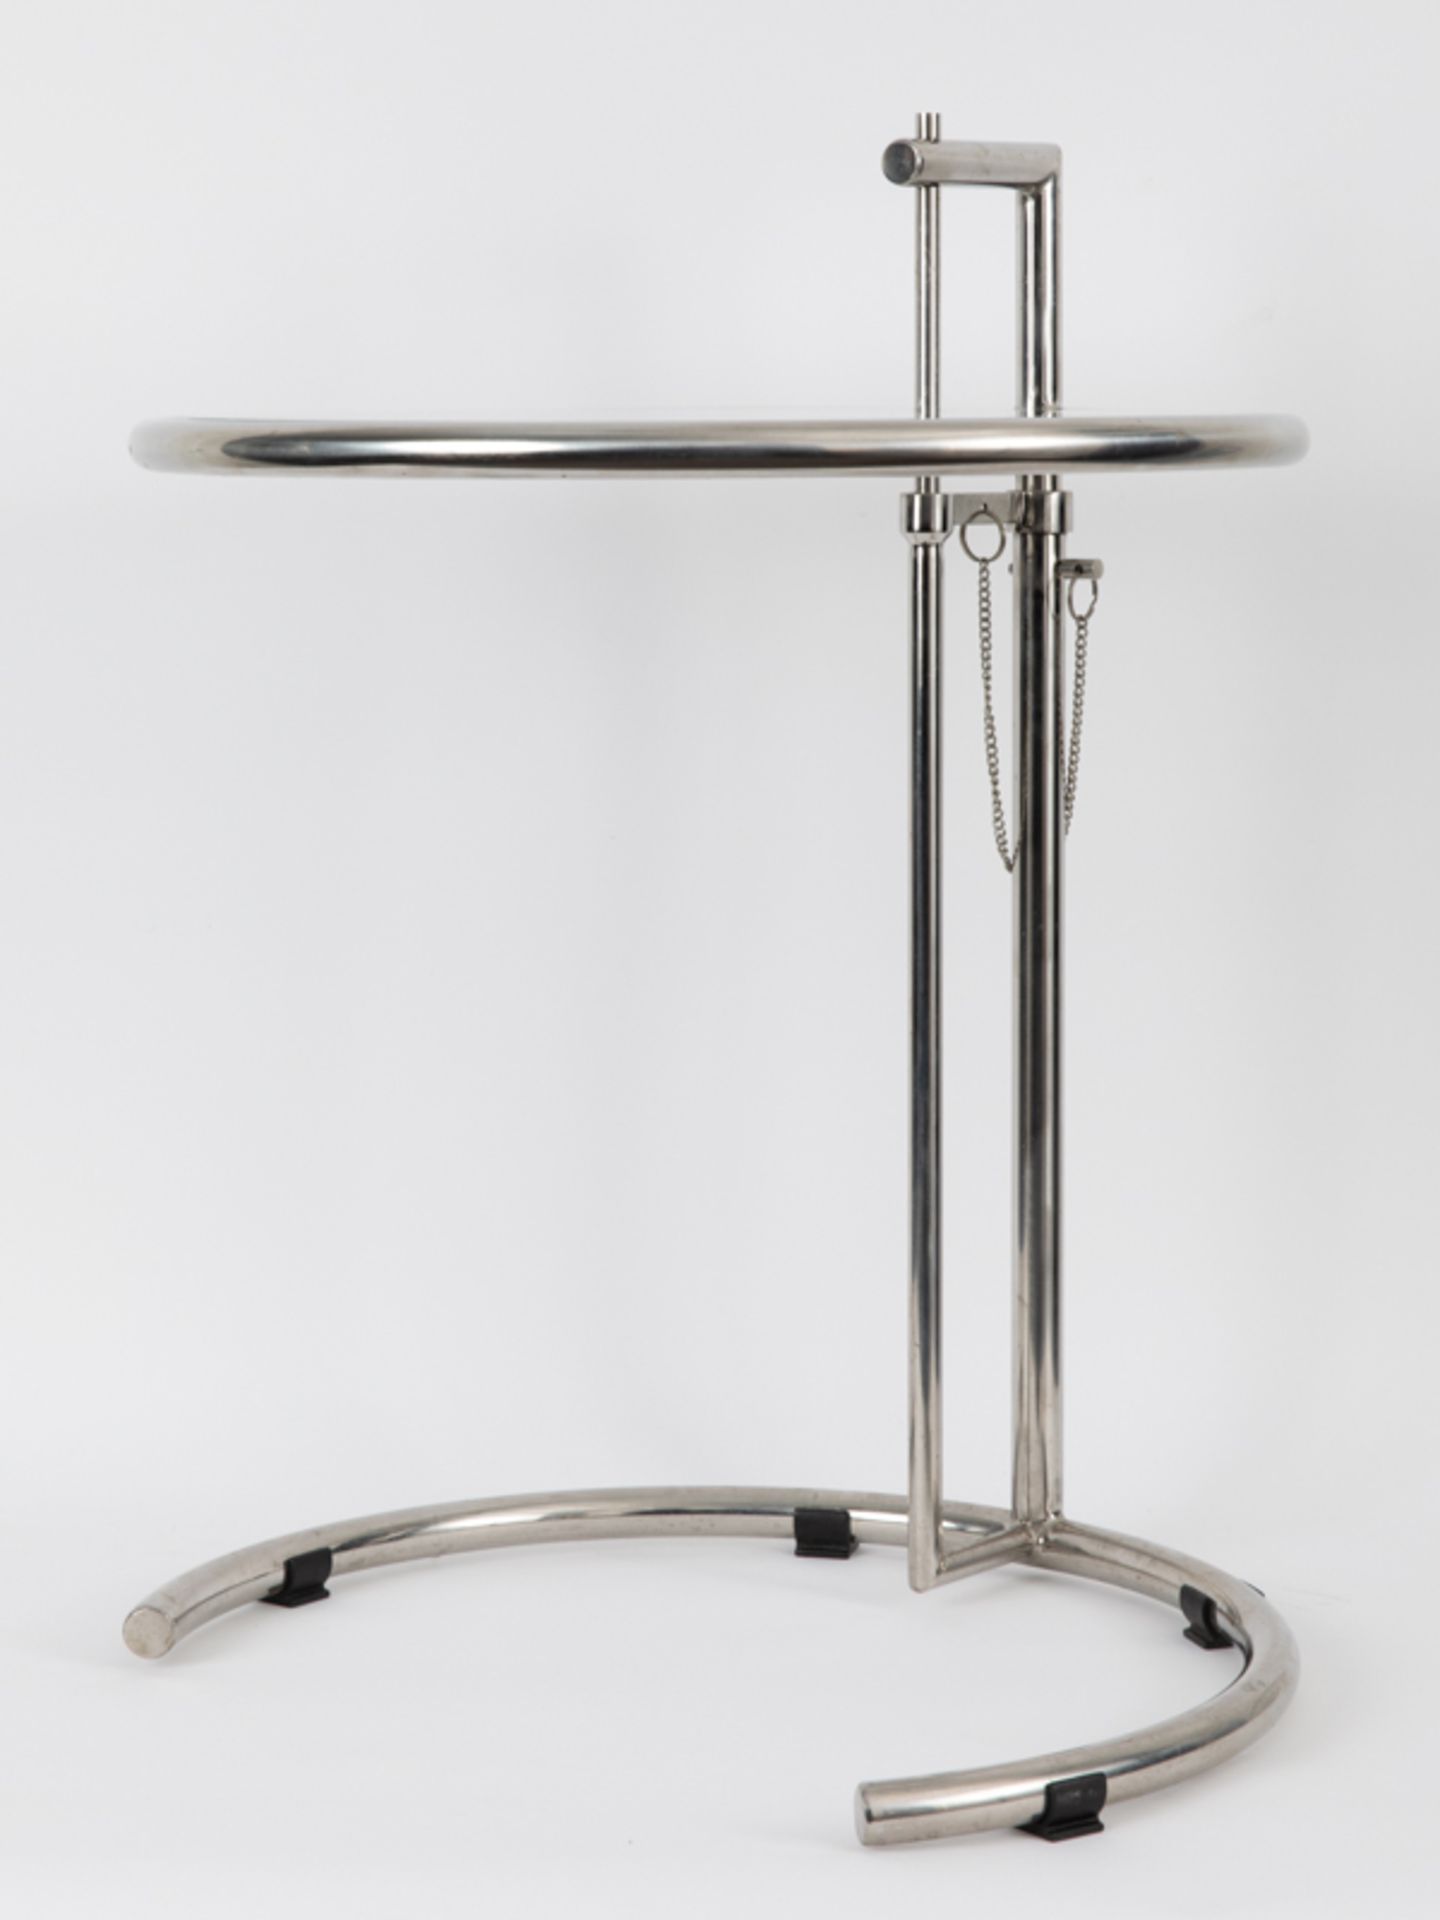 Beistelltisch "Adjustable Table" nach Eileen Gray, Neuzeitlich Glas und verchromter Stahl; - Bild 4 aus 5